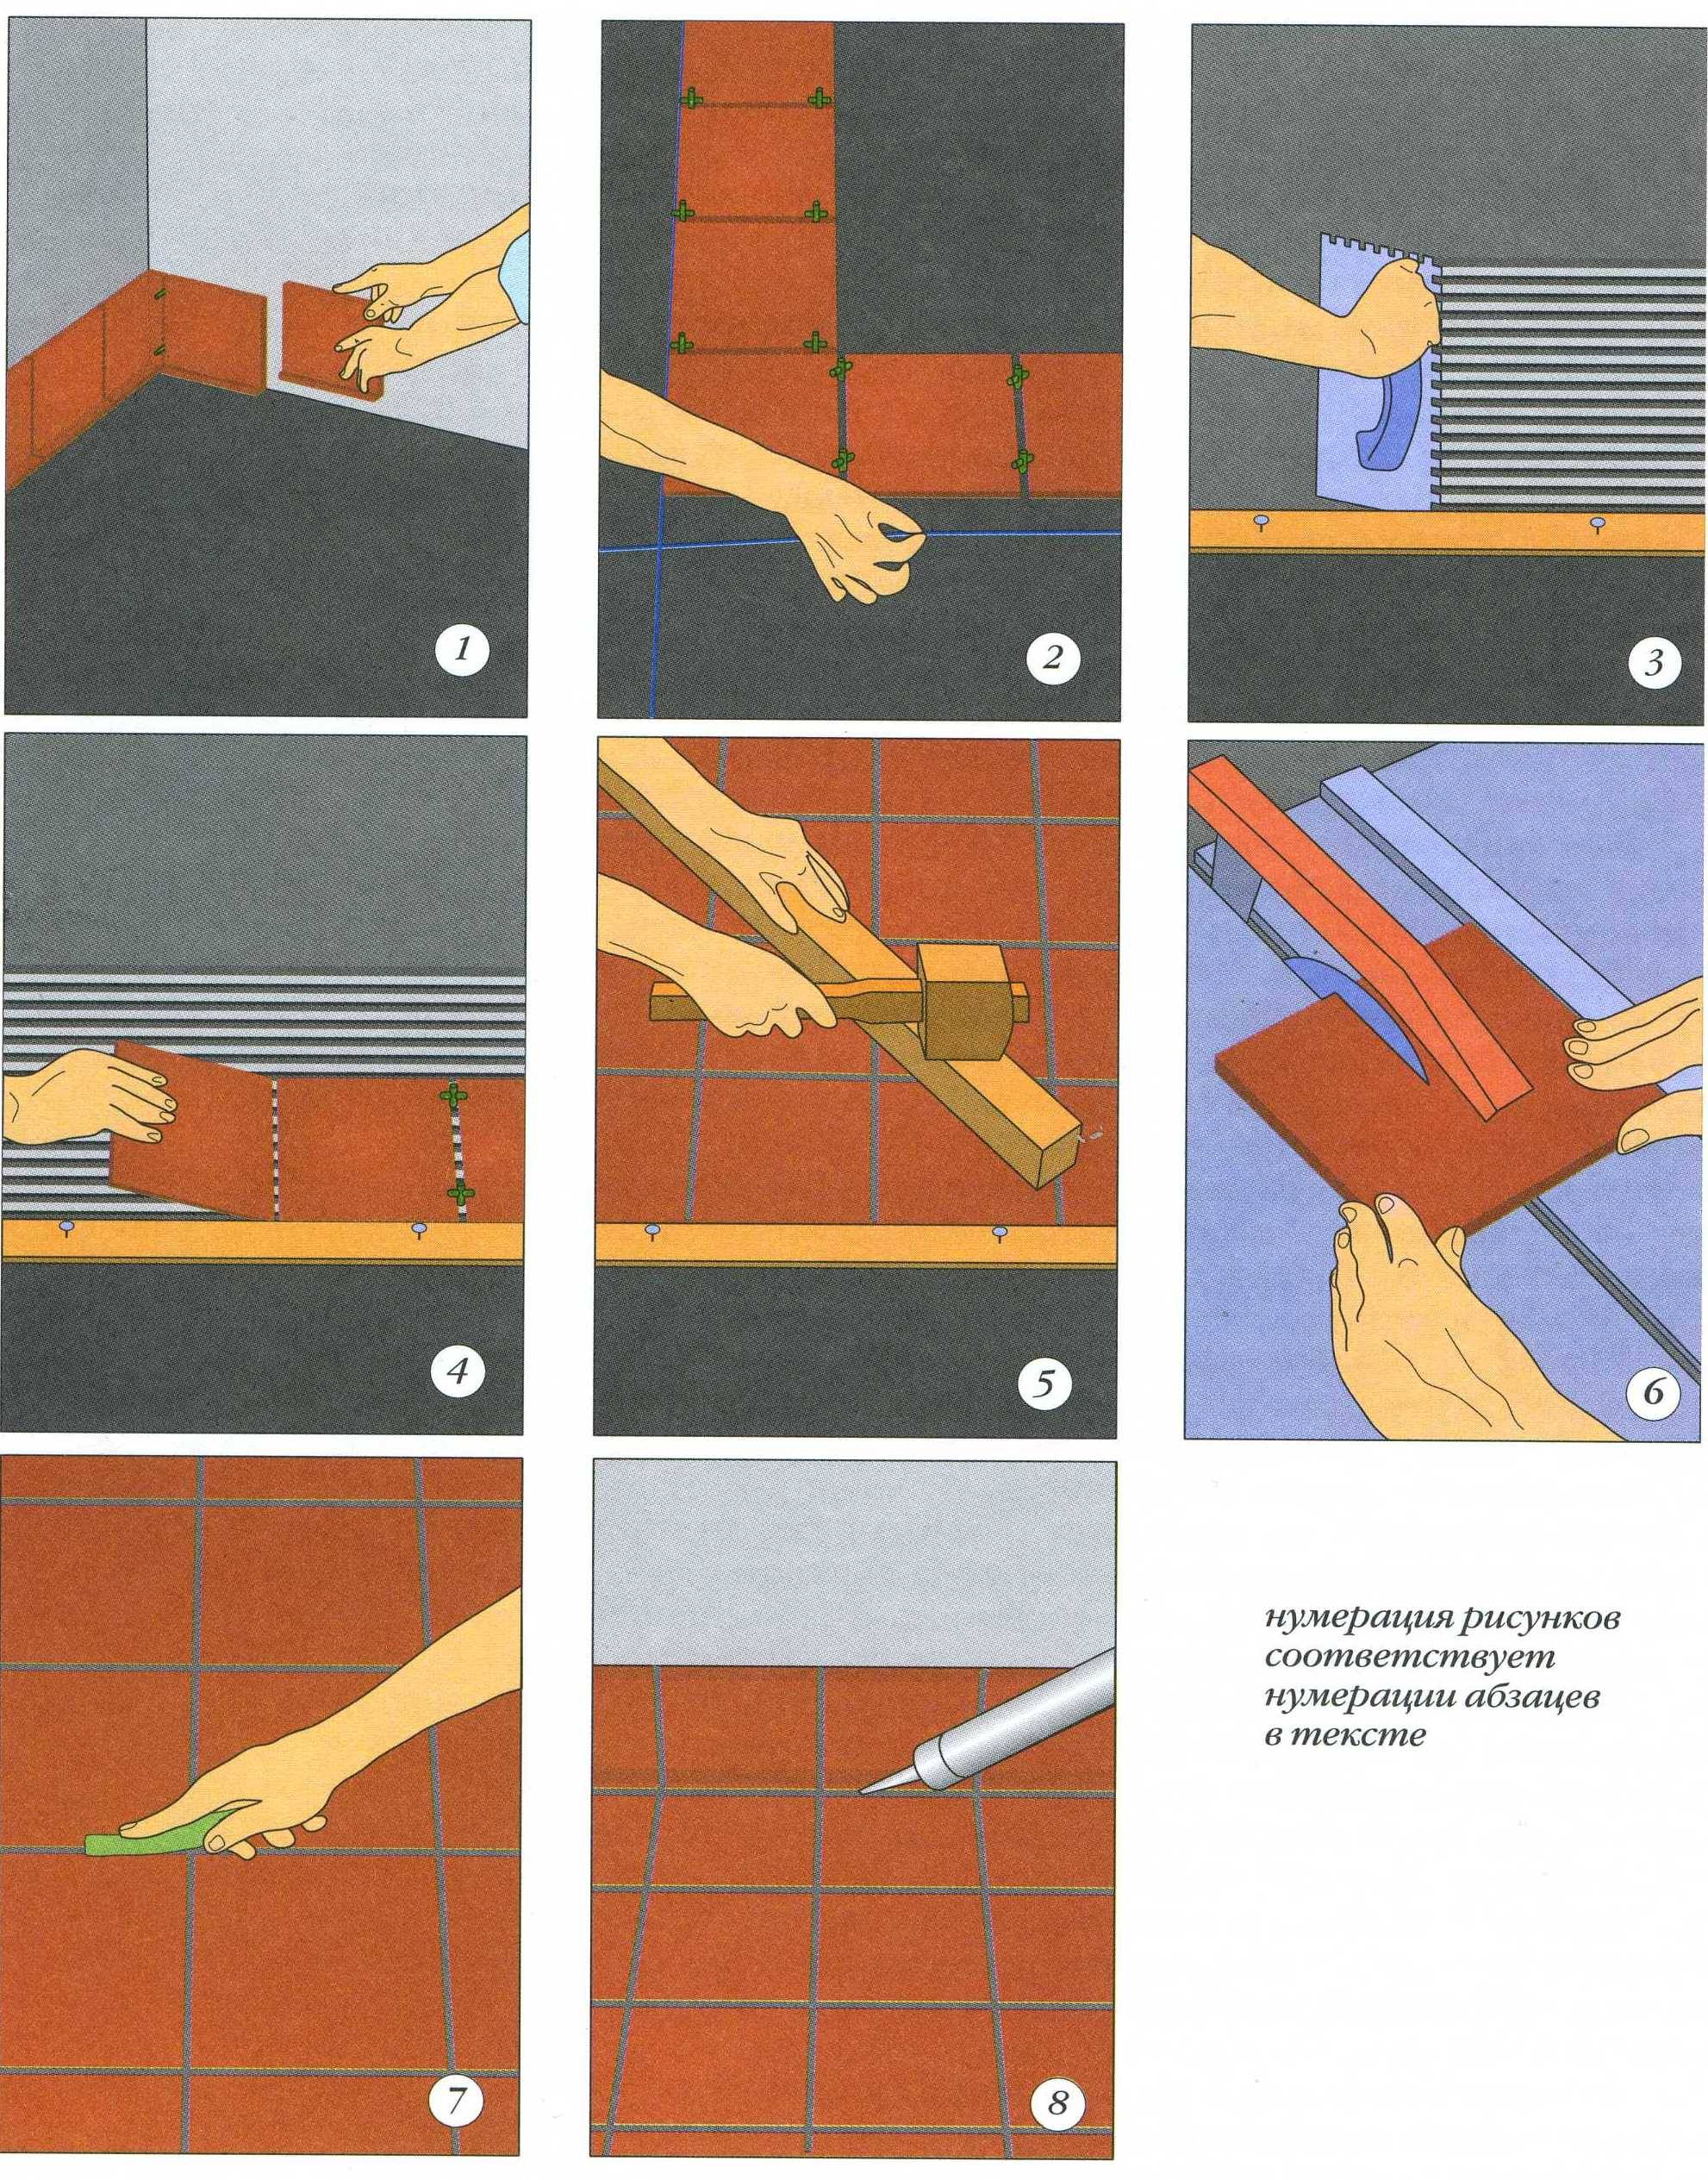 Укладка керамогранита на пол своими руками: фото пошаговой укладки и видео инструкции